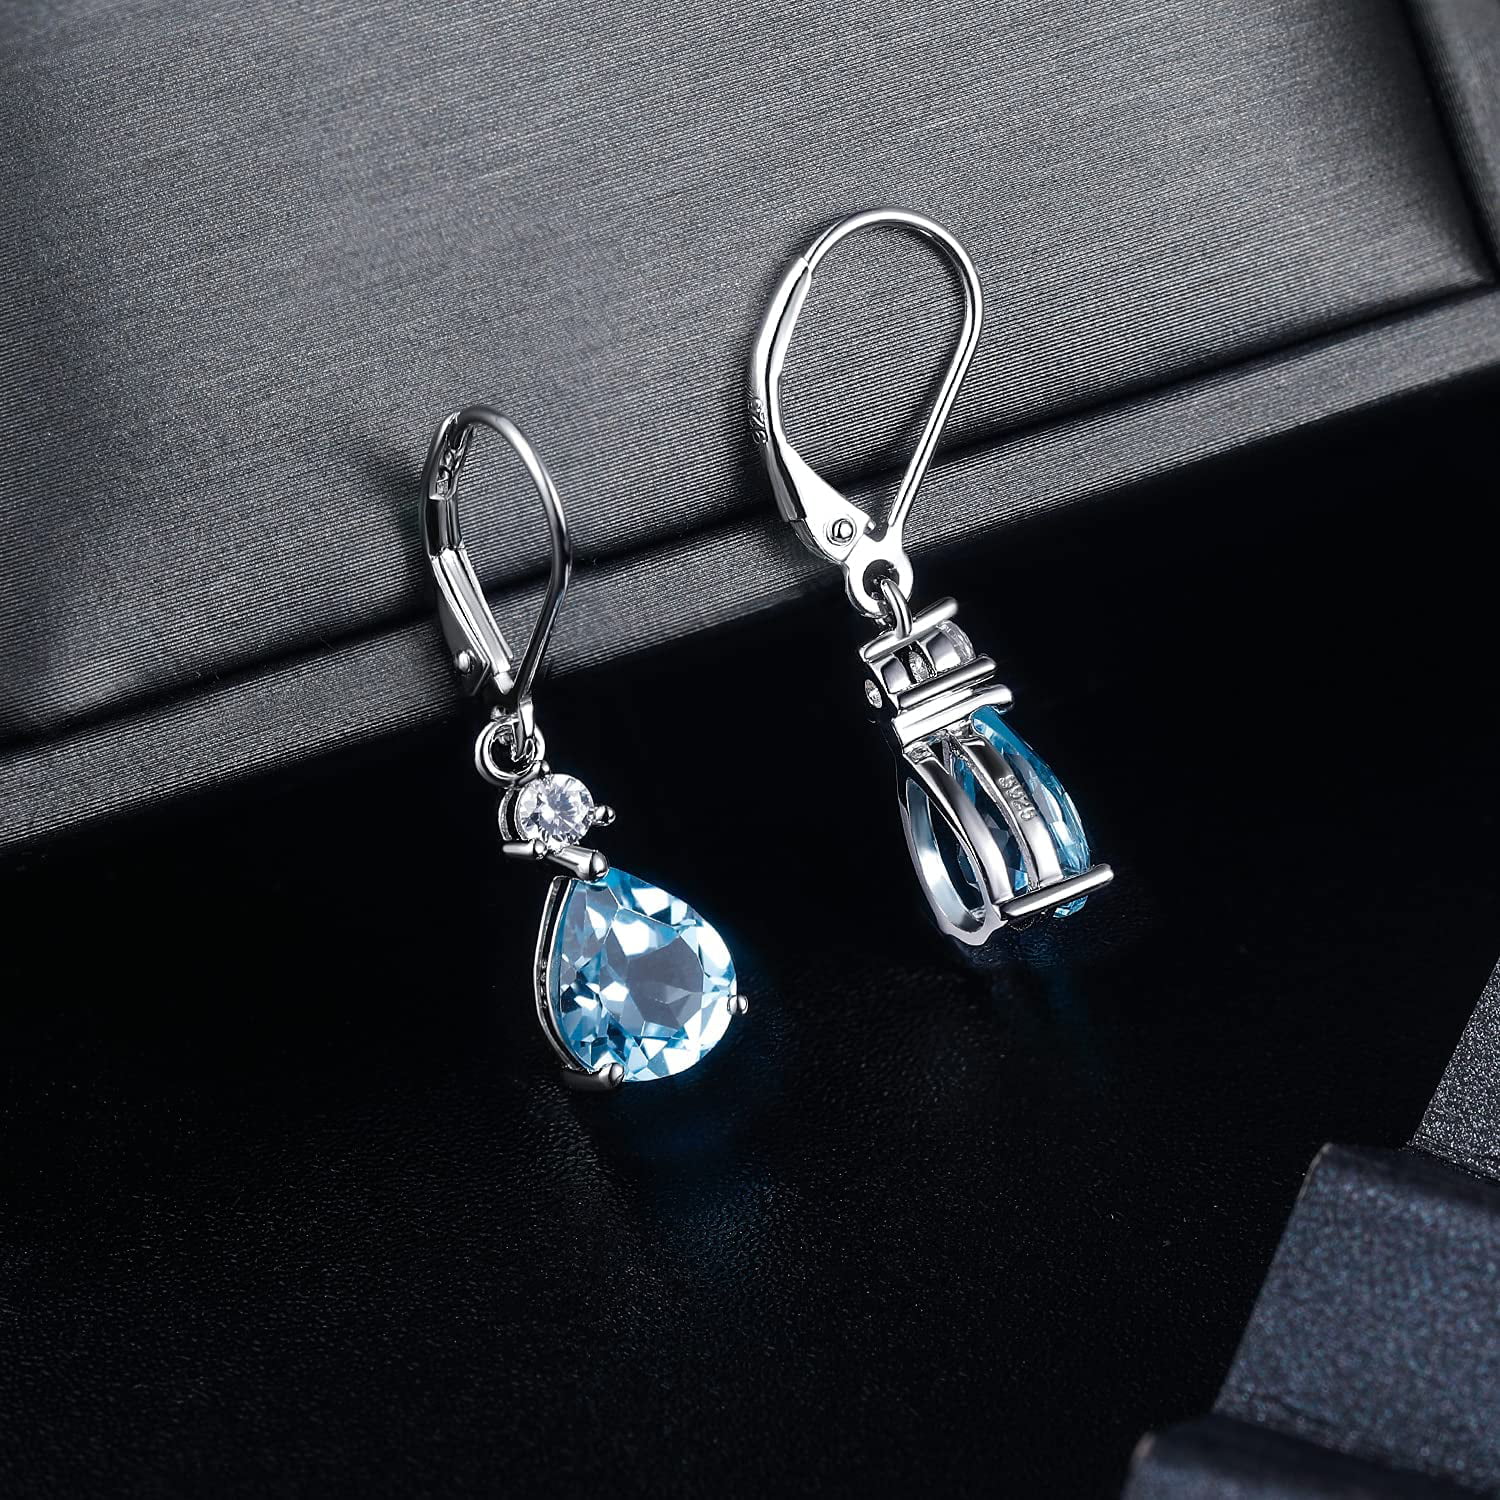 925 Sterling Silver Blue Topaz Teardrop Earrings Drop Dangly Earring Leverback Hypoallergenic Jewelry for Women Girls 